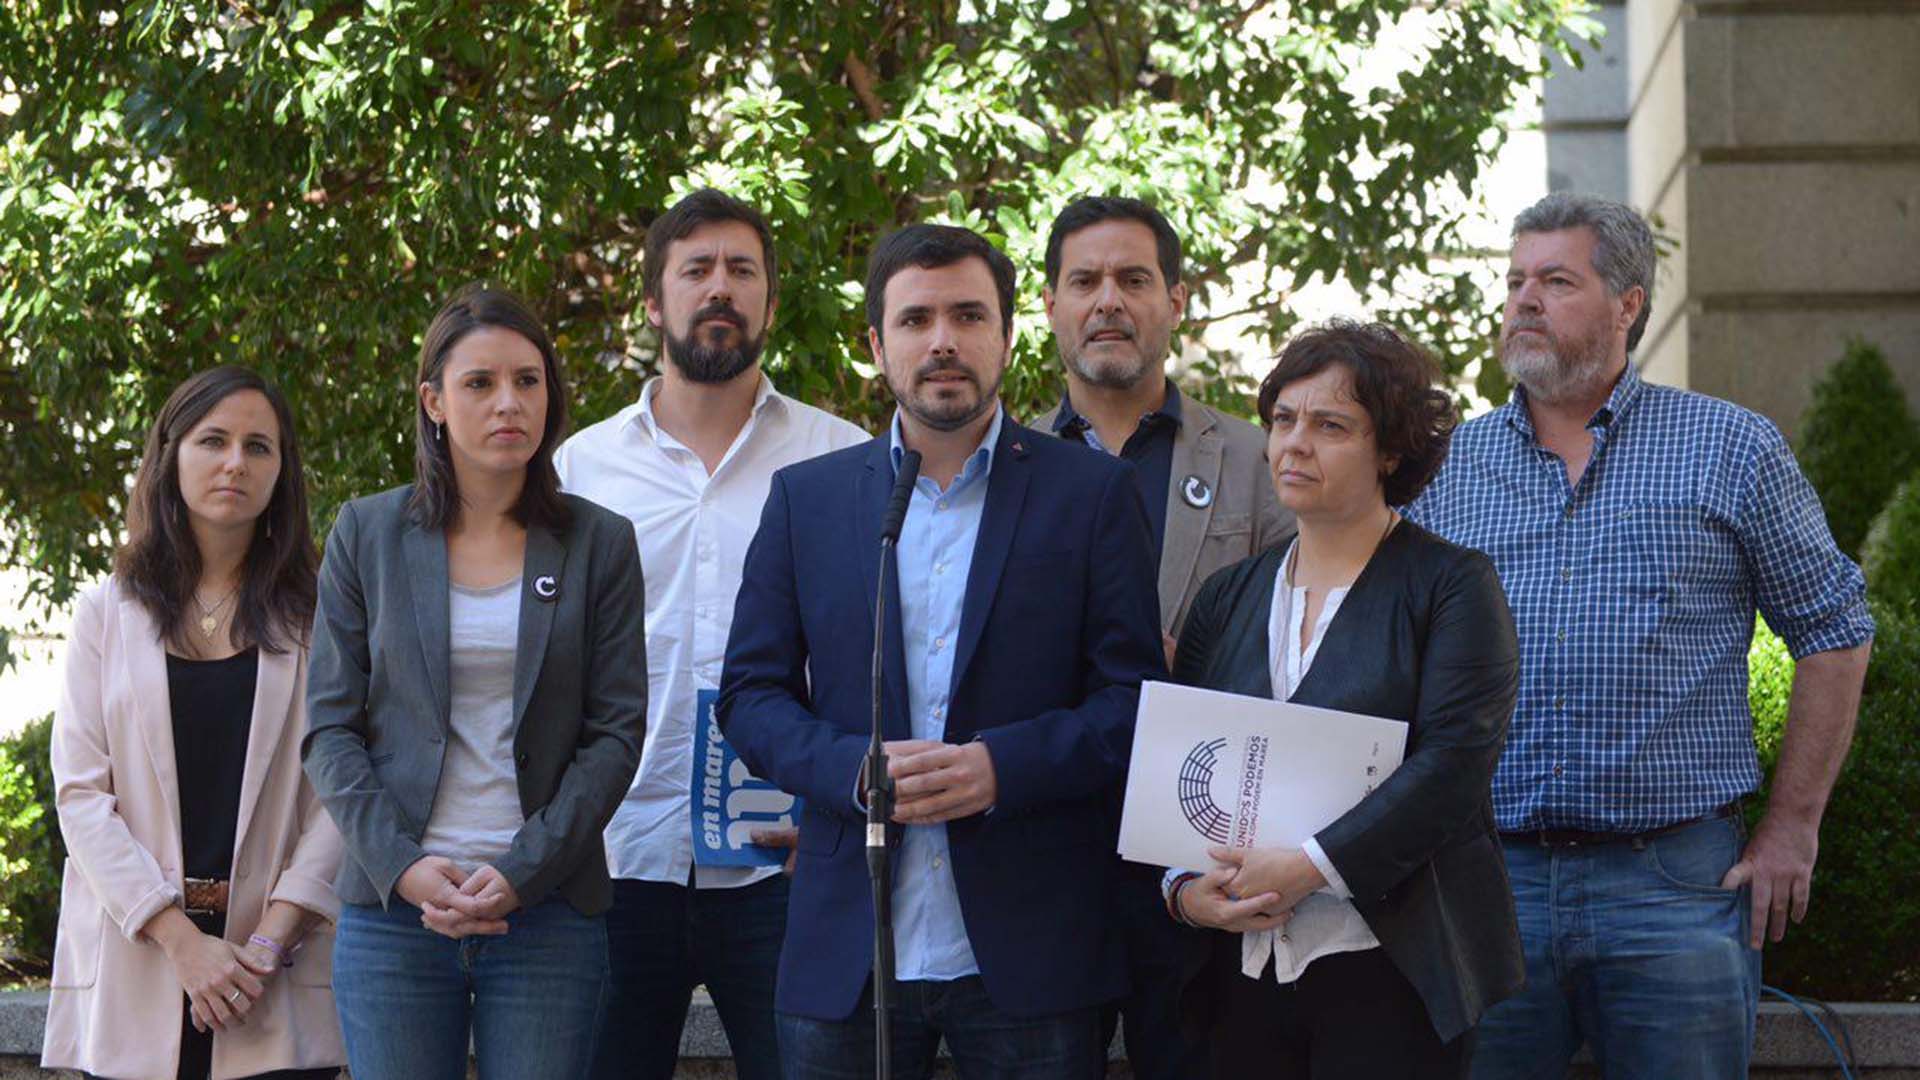 La moción de censura de Podemos a Rajoy se debatirá el 13 de junio en el Congreso